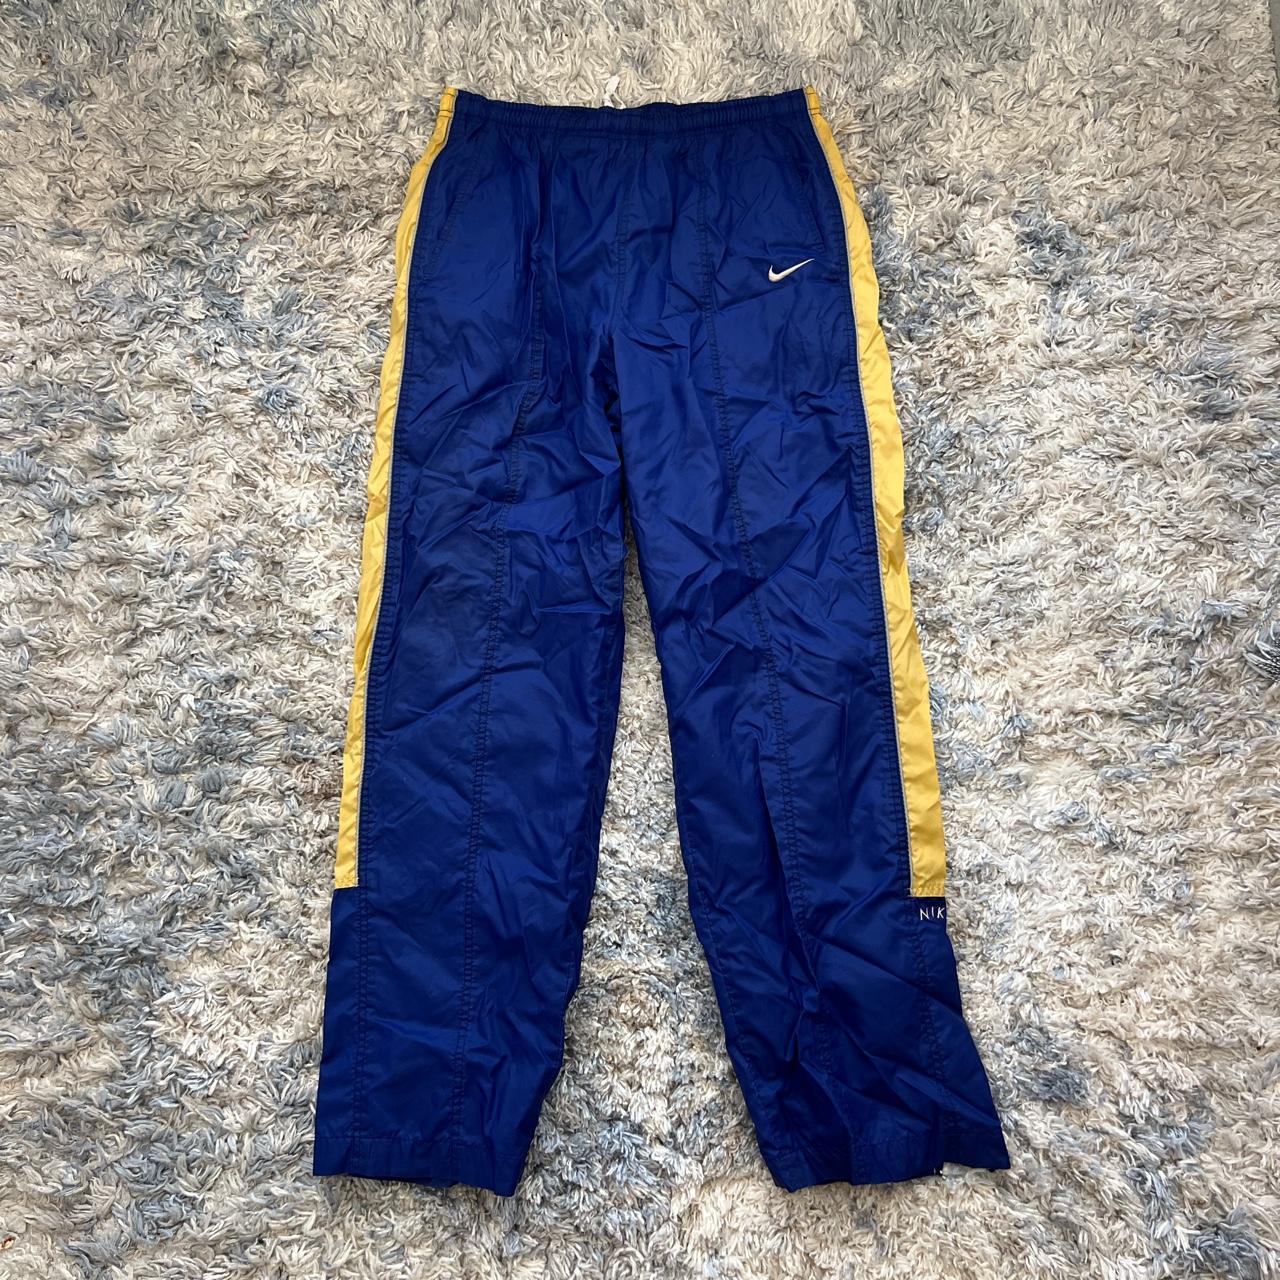 Vintage 90s/00s Nike Sweatpants Size L 30” x... - Depop